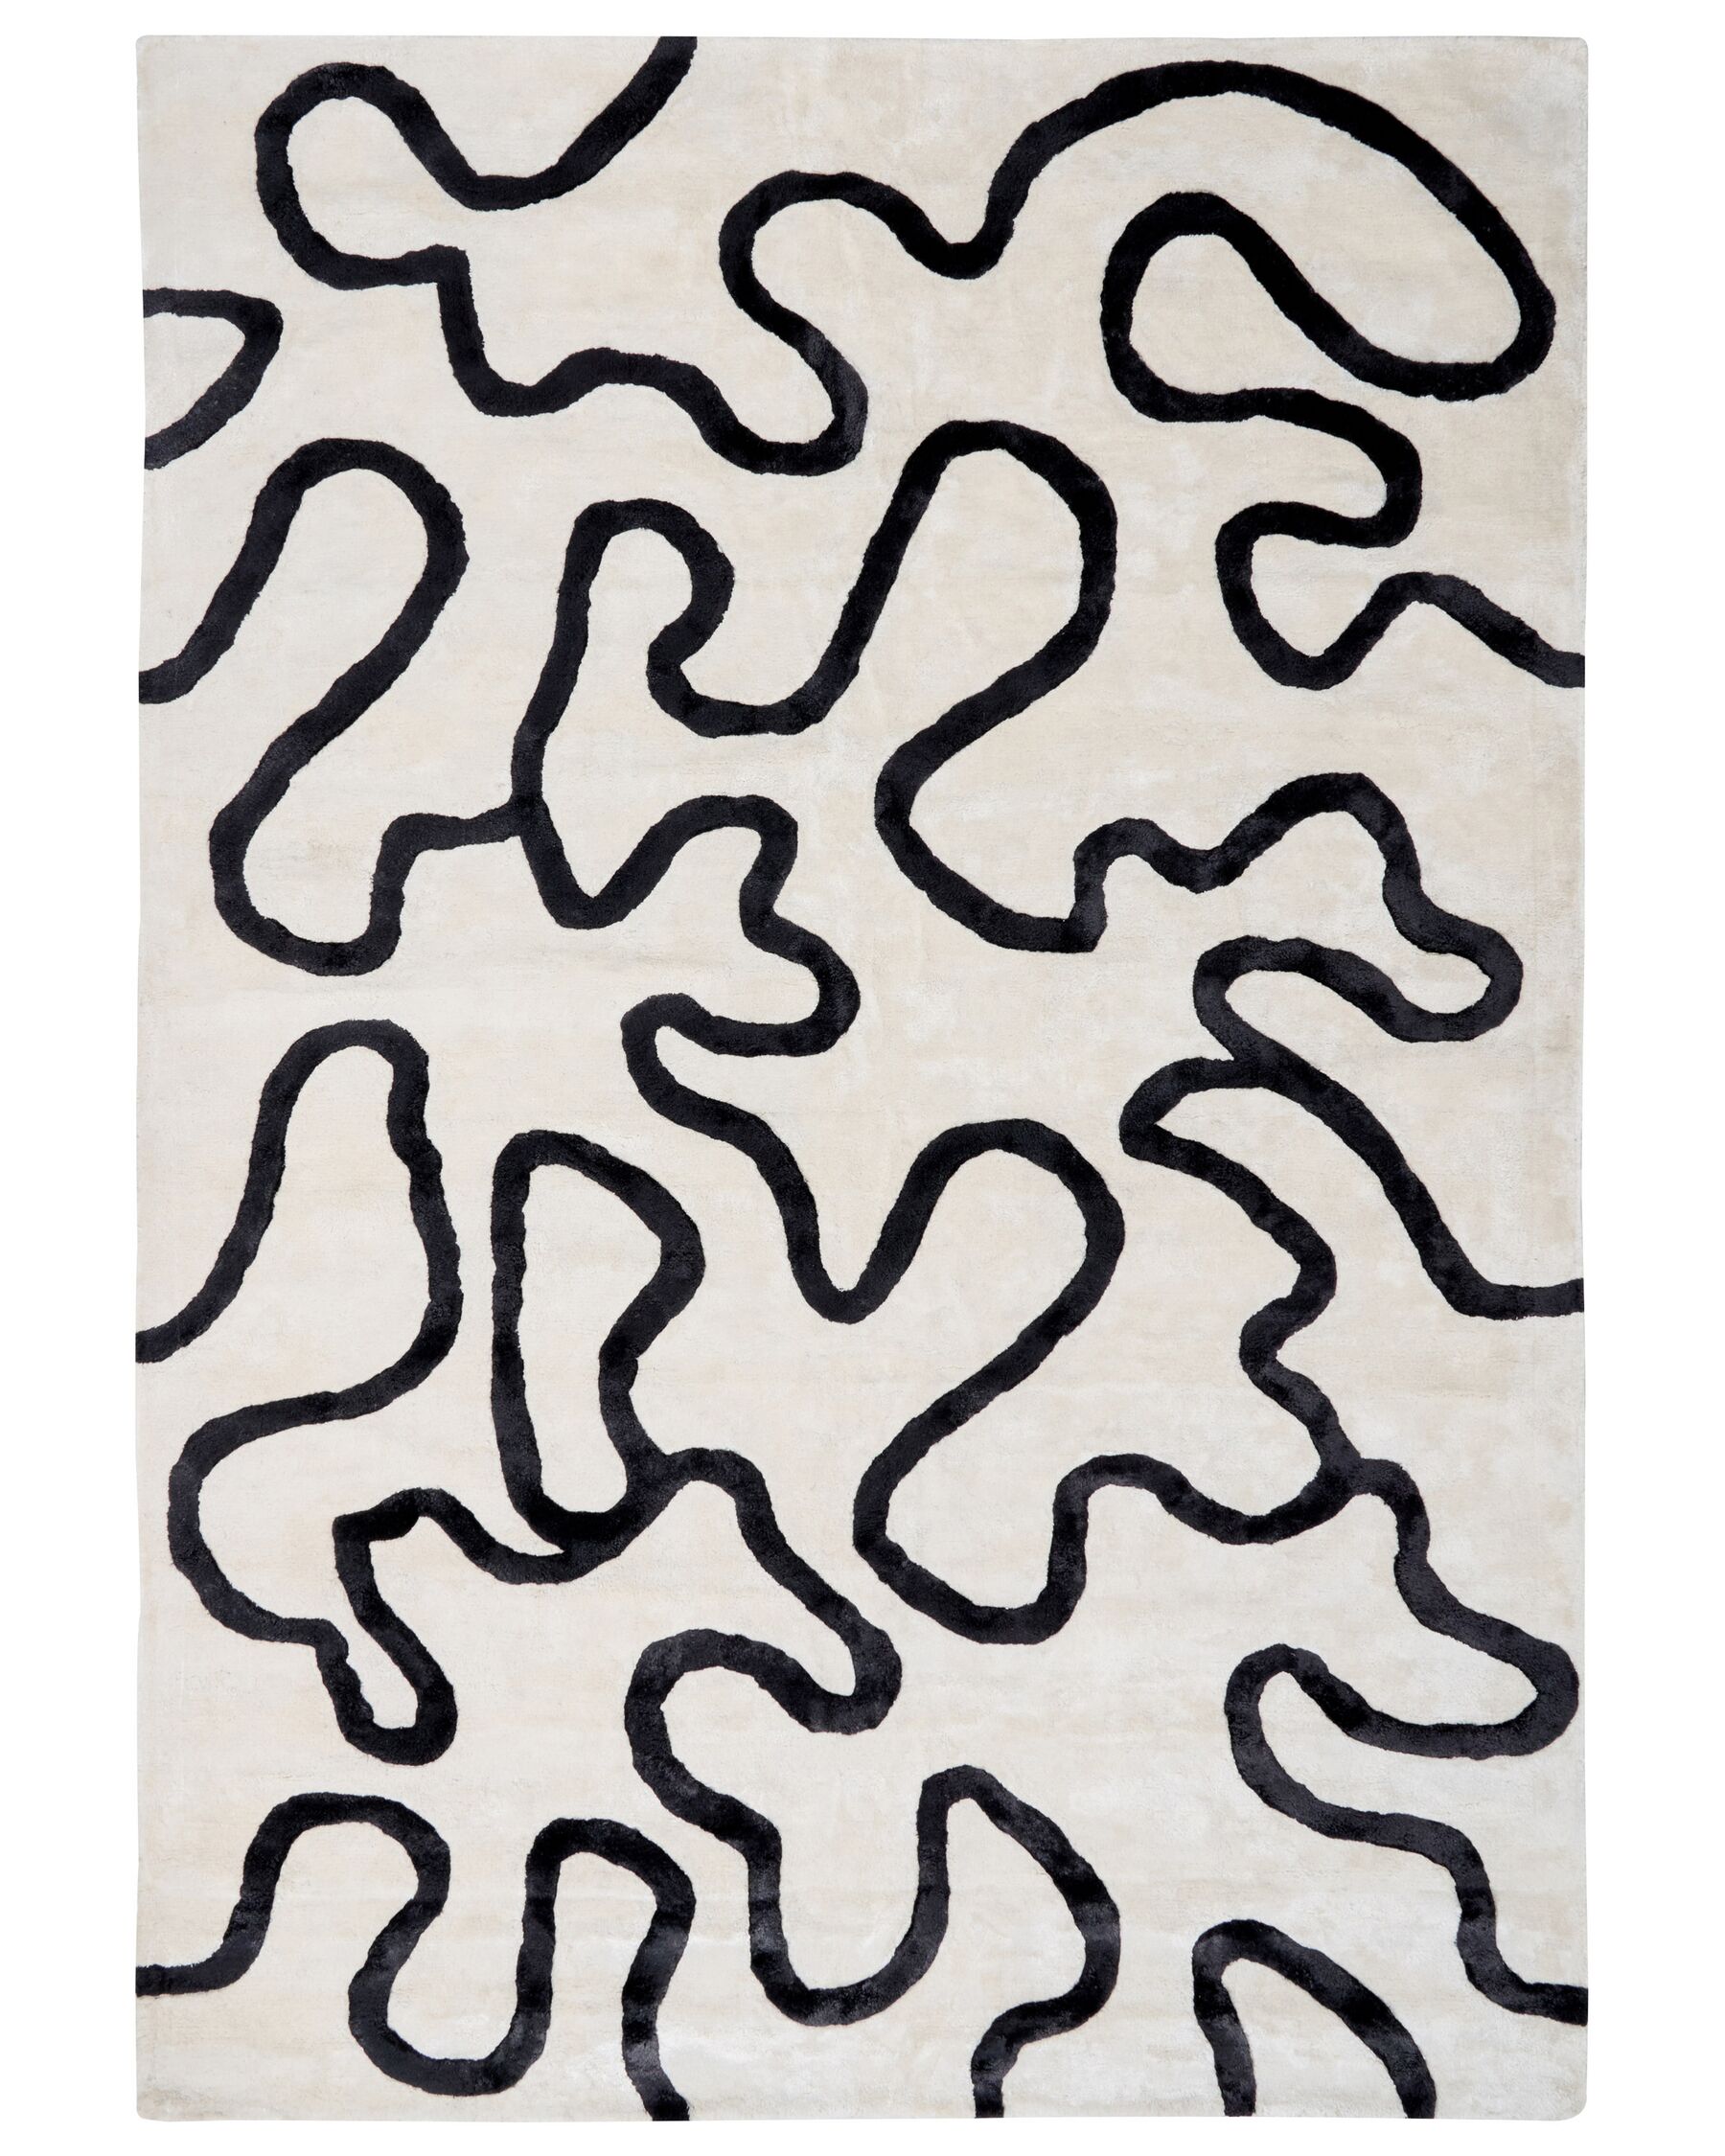 Viskózový koberec s abstraktním vzorem 160 x 230 cm bílý/černý KAPPAR_903981